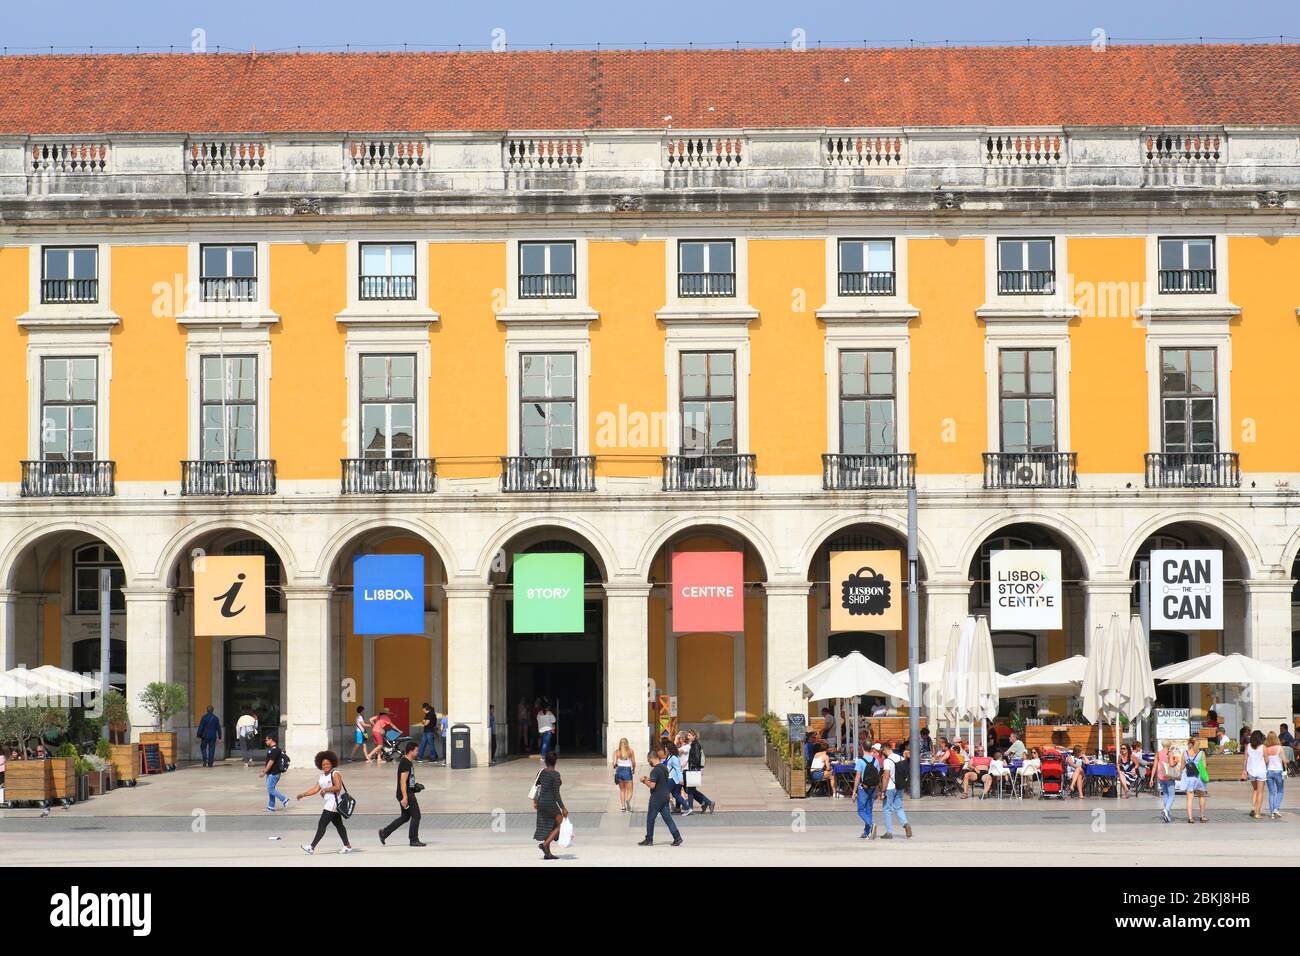 Portugal, Lisbon, Baixa, Praça do Comércio (Commerce Square), 18th century facade with the entrance to Lisboa Story Center Stock Photo